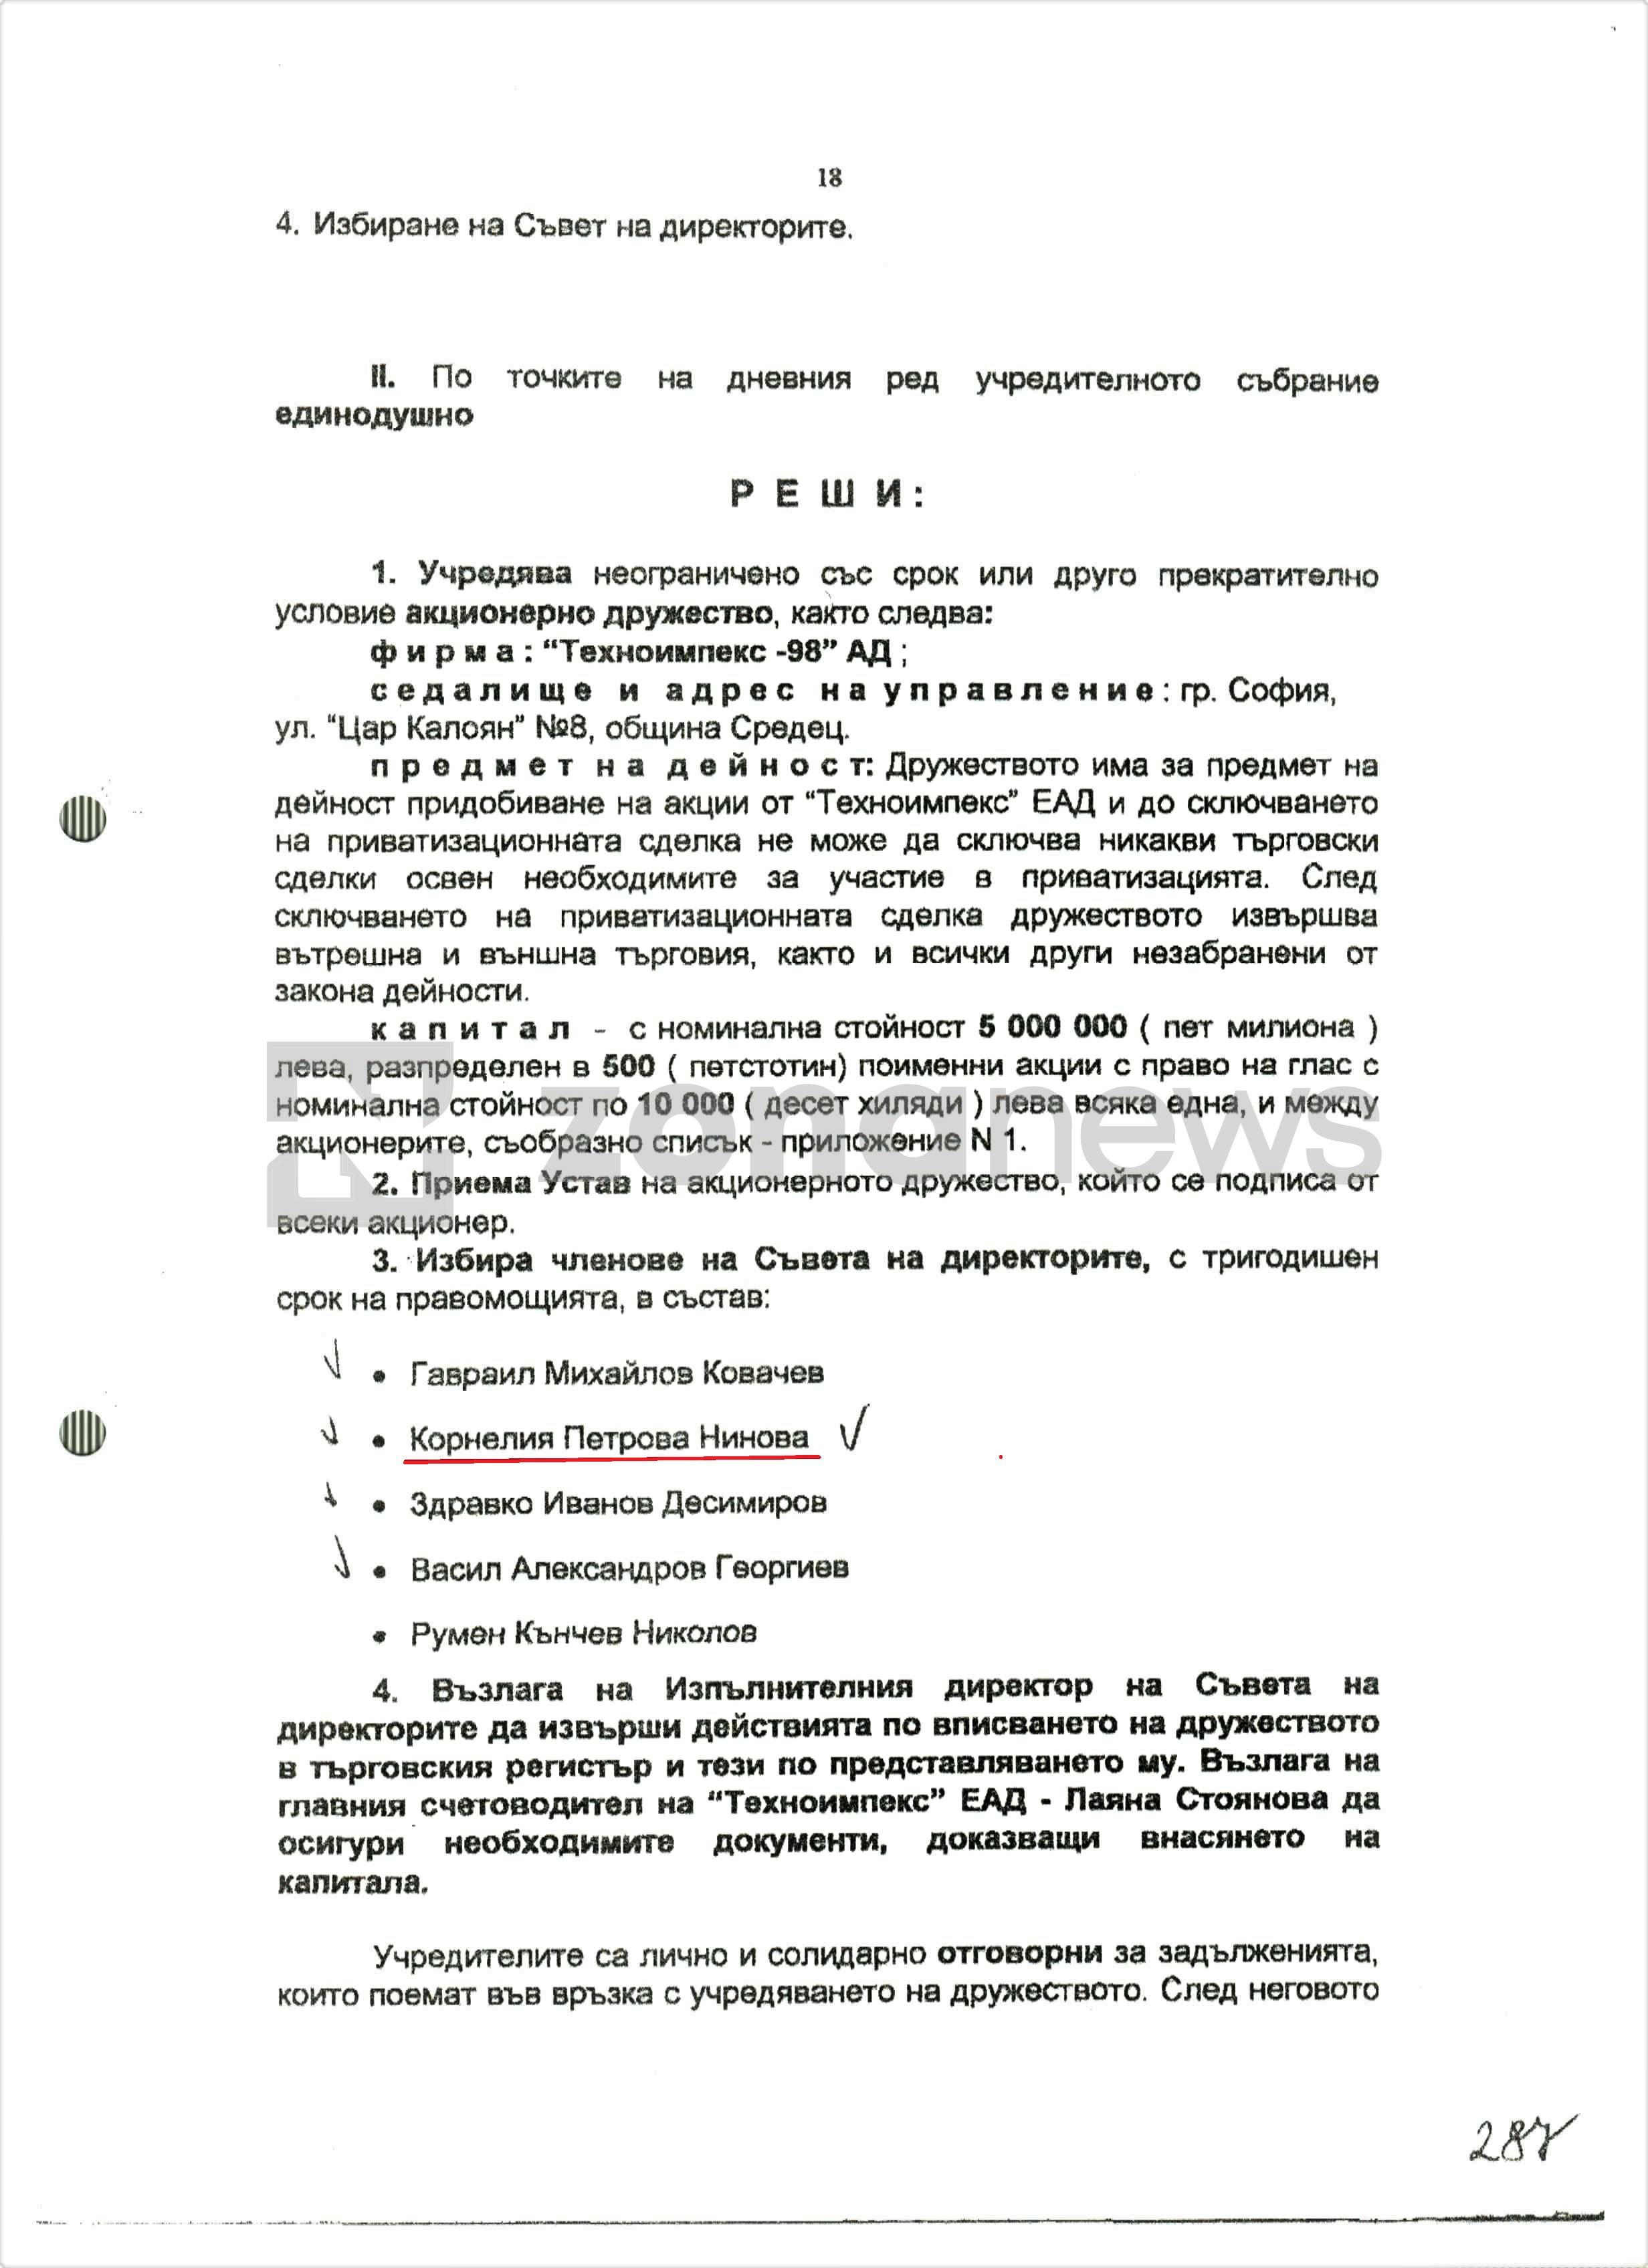 Протокол на Учредителното събрание на РМД Техноимпекс-98`